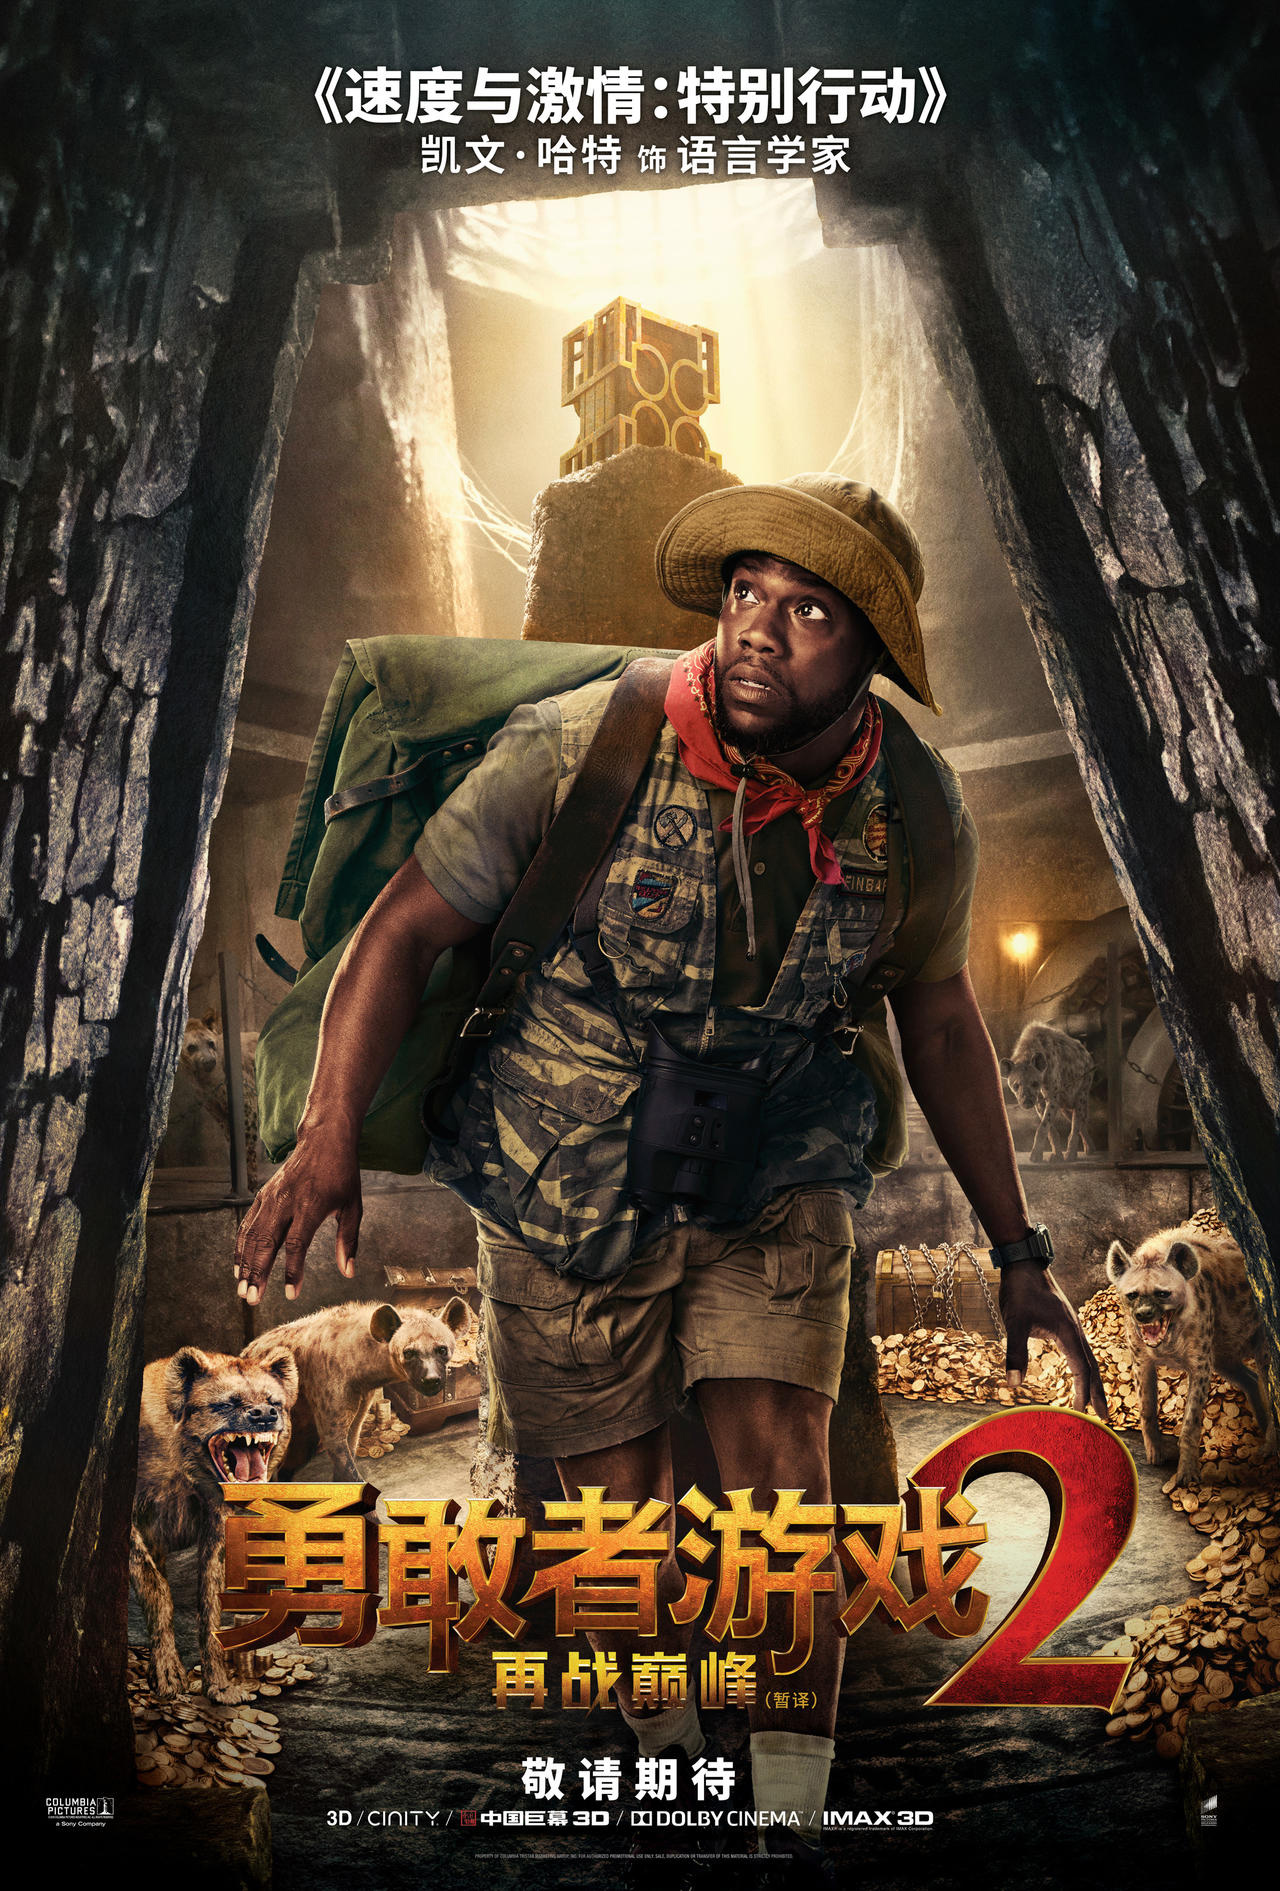 《勇敢者游戏2》中文版角色海报曝光 神秘人物露真容